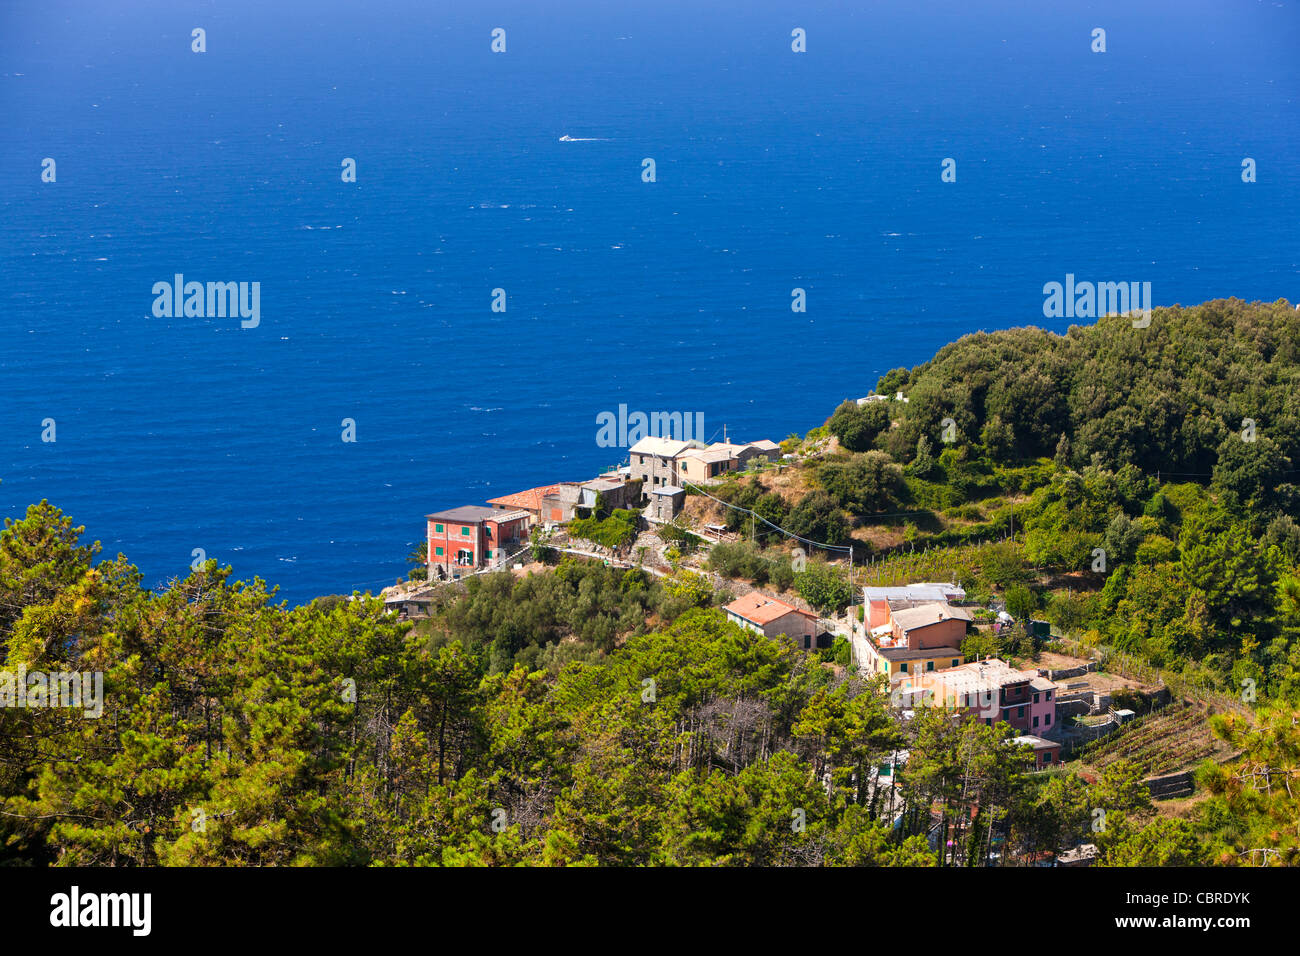 View towards Vernazza from Pornacchi, Cinque Terre, Province of La Spezia, Liguria, Italy, Europe Stock Photo